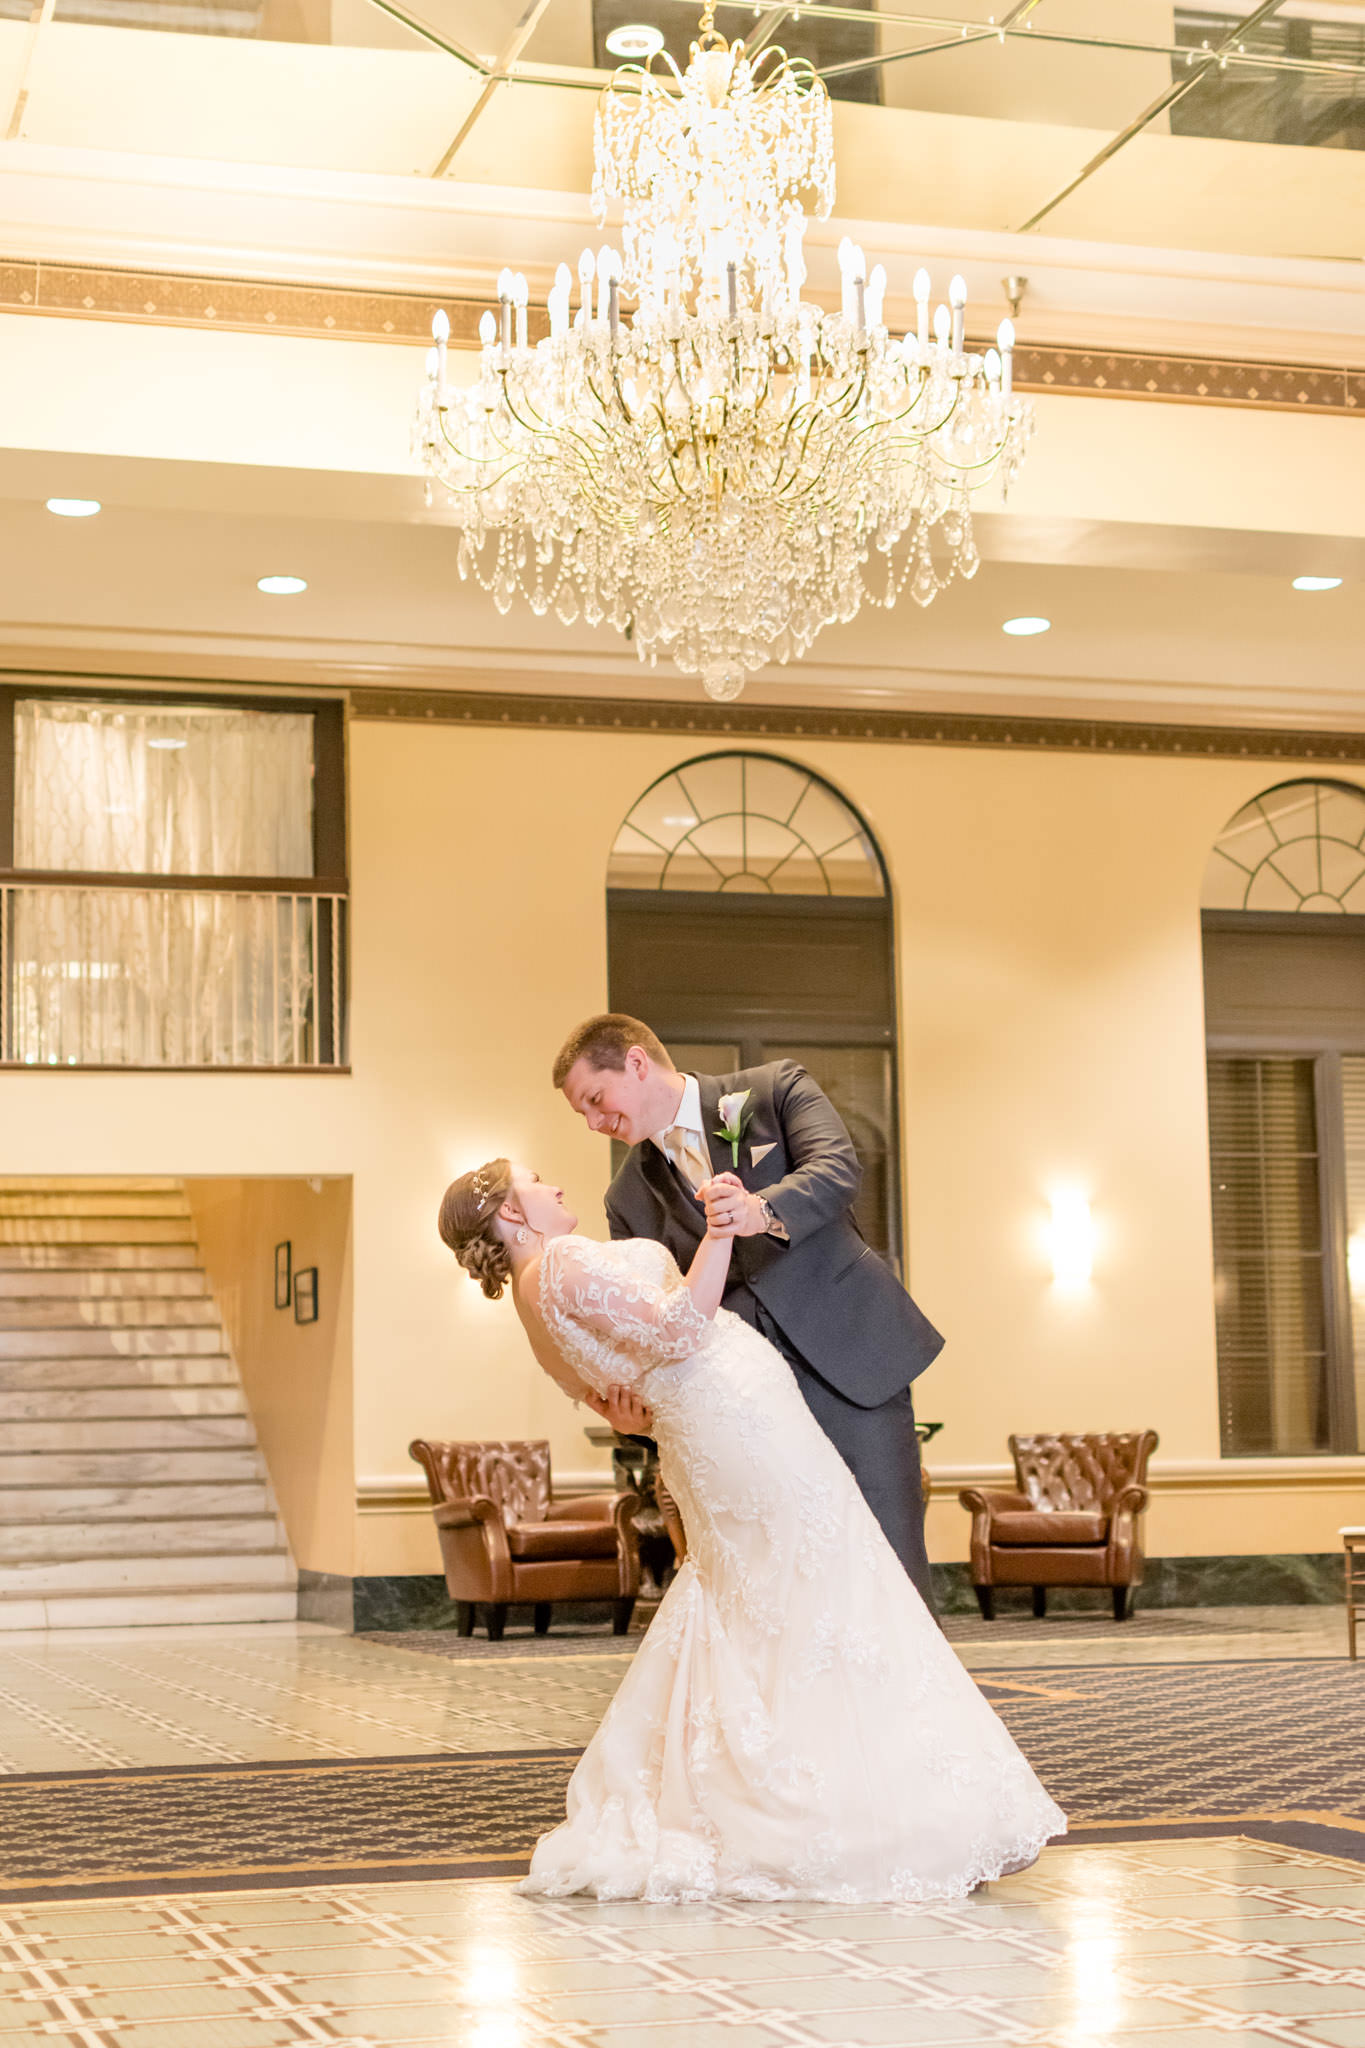 Groom dips bride under Marott chandelier